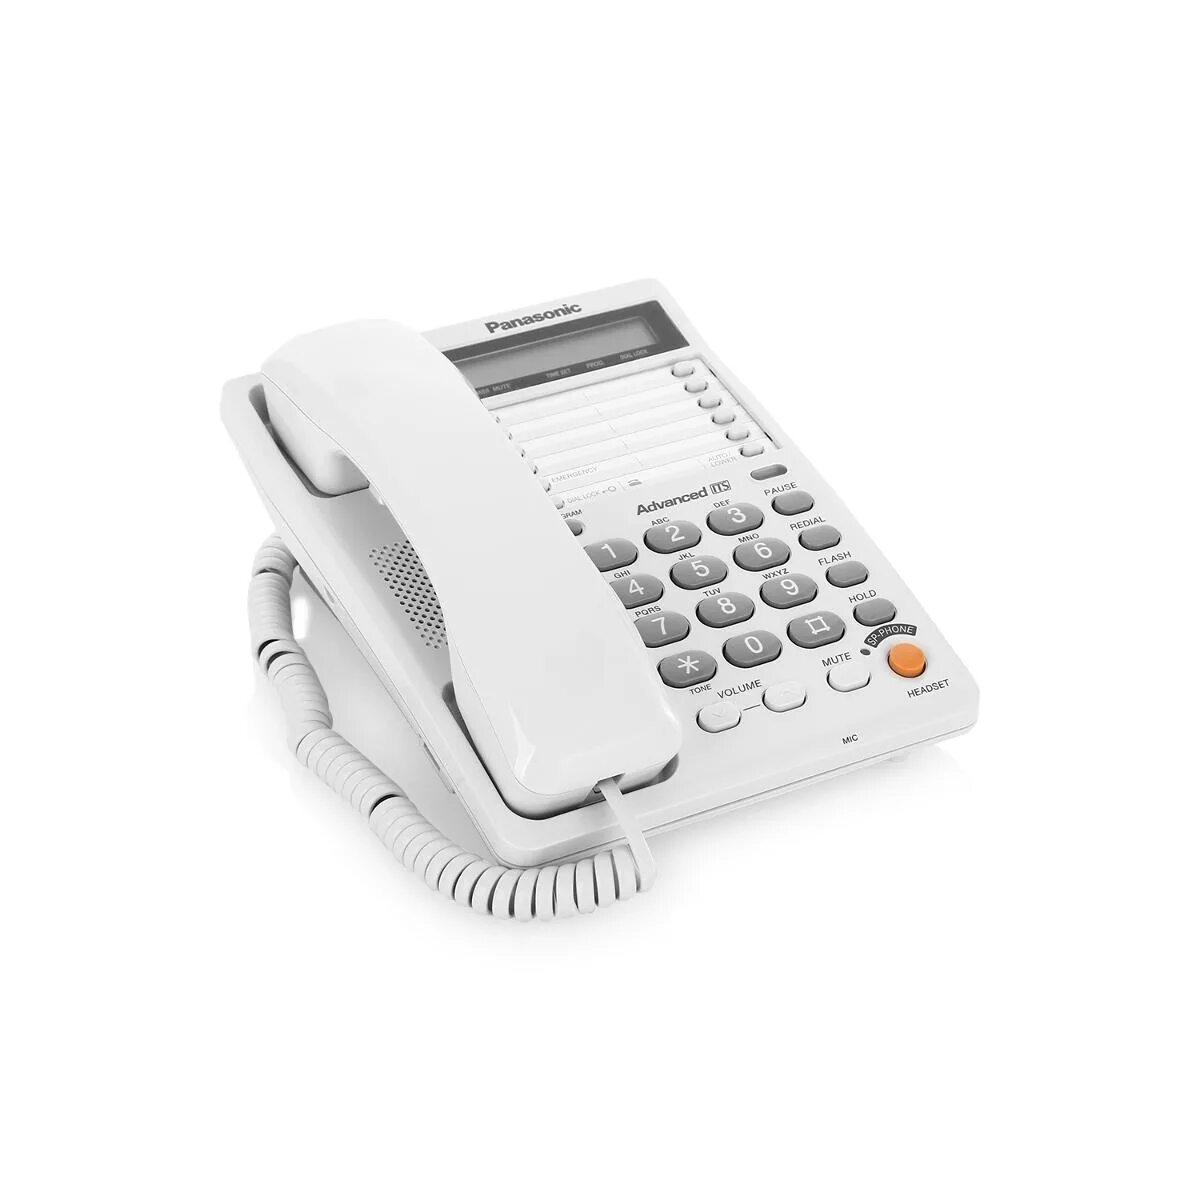 Panasonic KX-ts2365ruw. Проводной телефон Панасоник KX-ts2365ruw. Телефон Panasonic KX-ts2365ruw, белый. Panasonic марки KX-ts2365ruw.